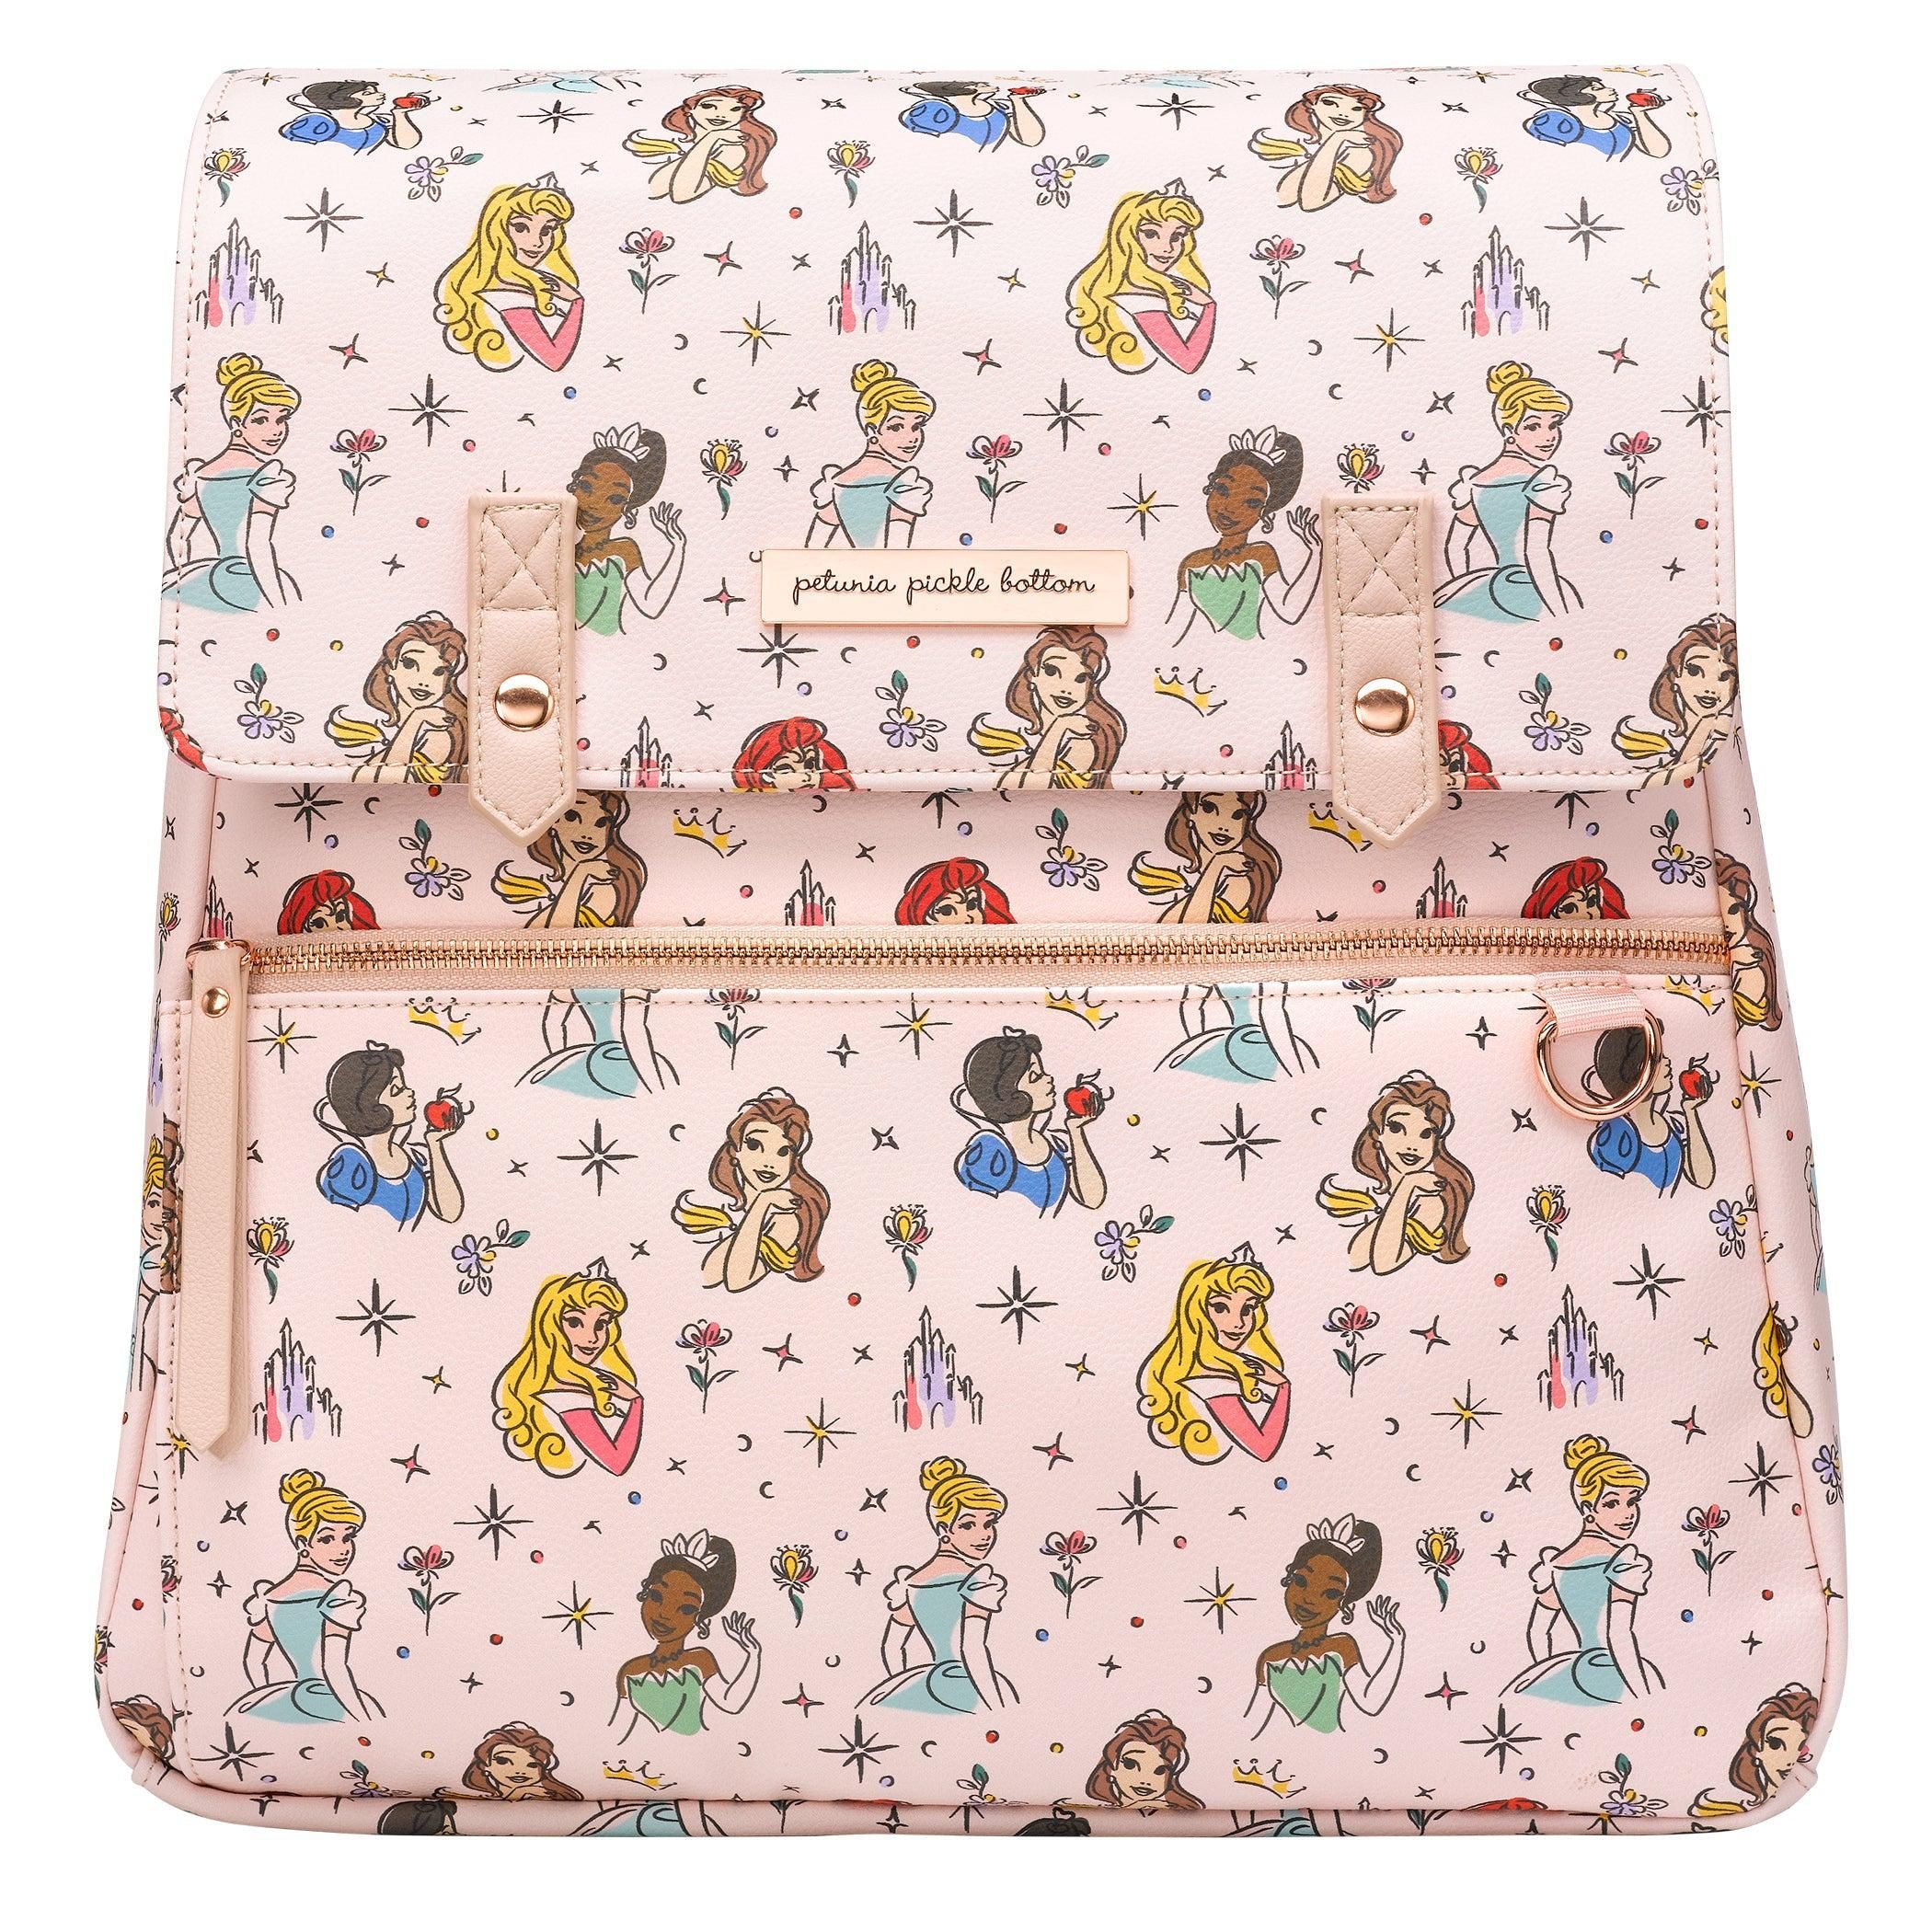 Meta Backpack Diaper Bag in Disney Princess | Petunia Pickle Bottom